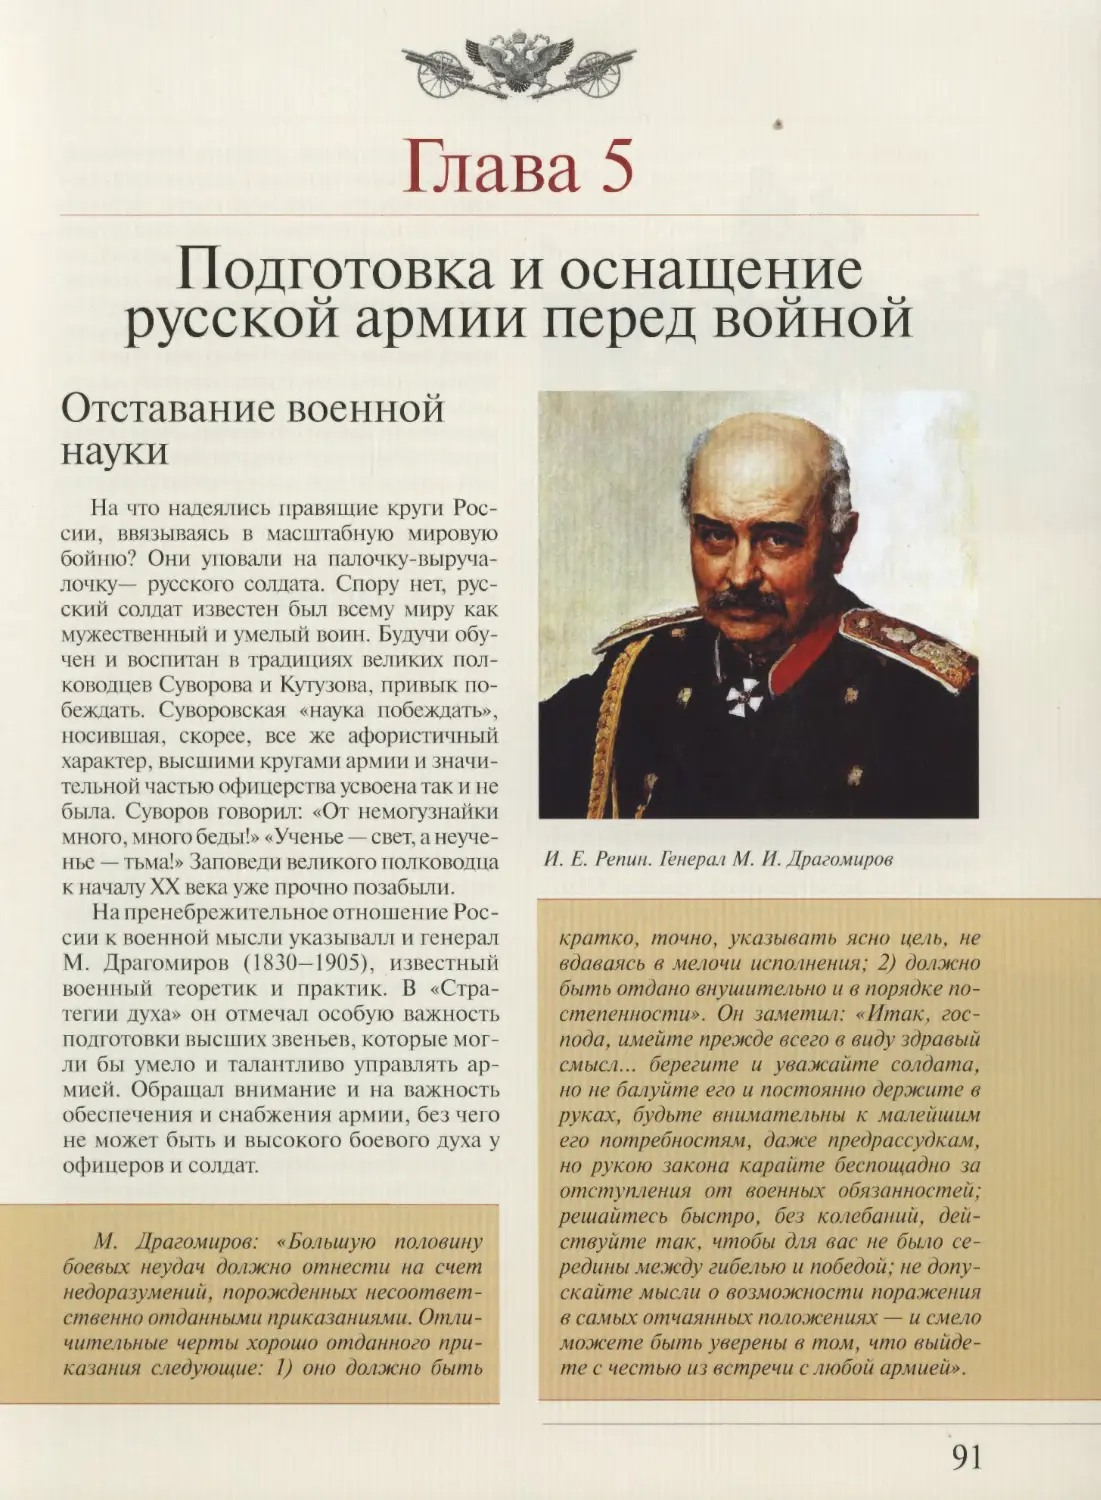 ГЛАВА 5.  Подготовка и оснащение русской армии перед войной